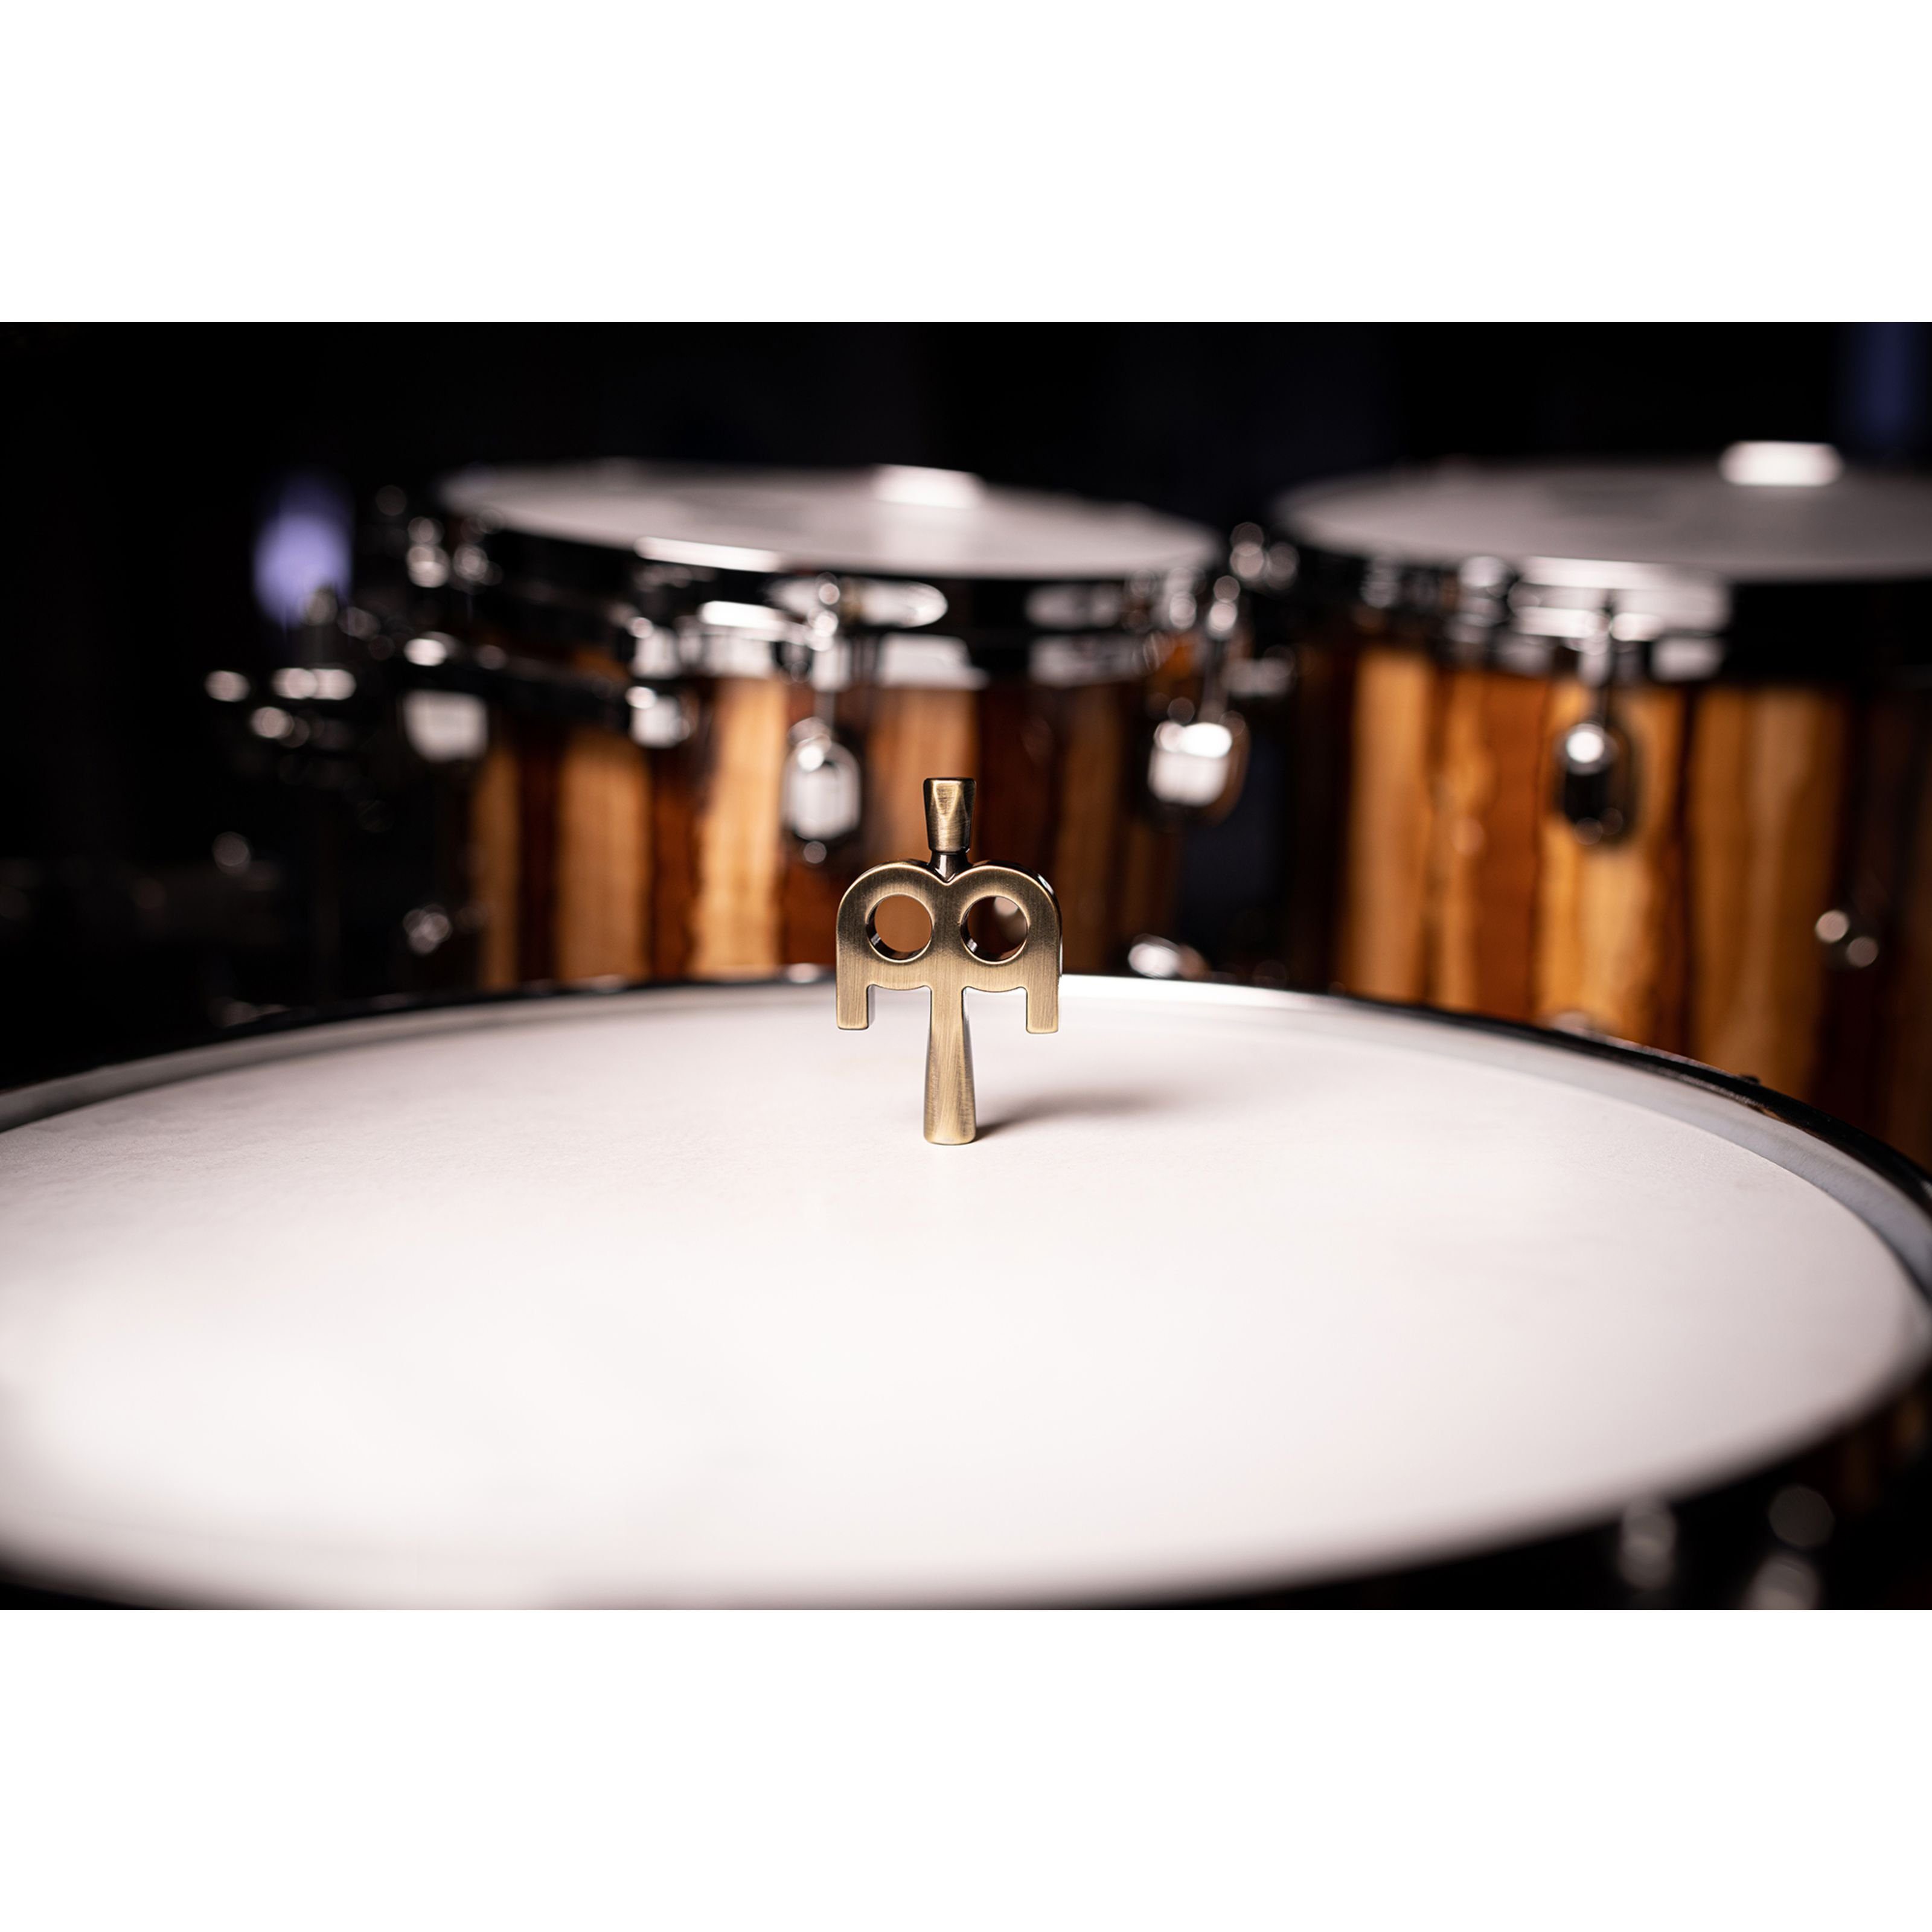 SB510 Bronze Spielzeug-Musikinstrument, Schlagzeuge Percussion Kinetic - für Stimmschlüssel Antique Meinl Key